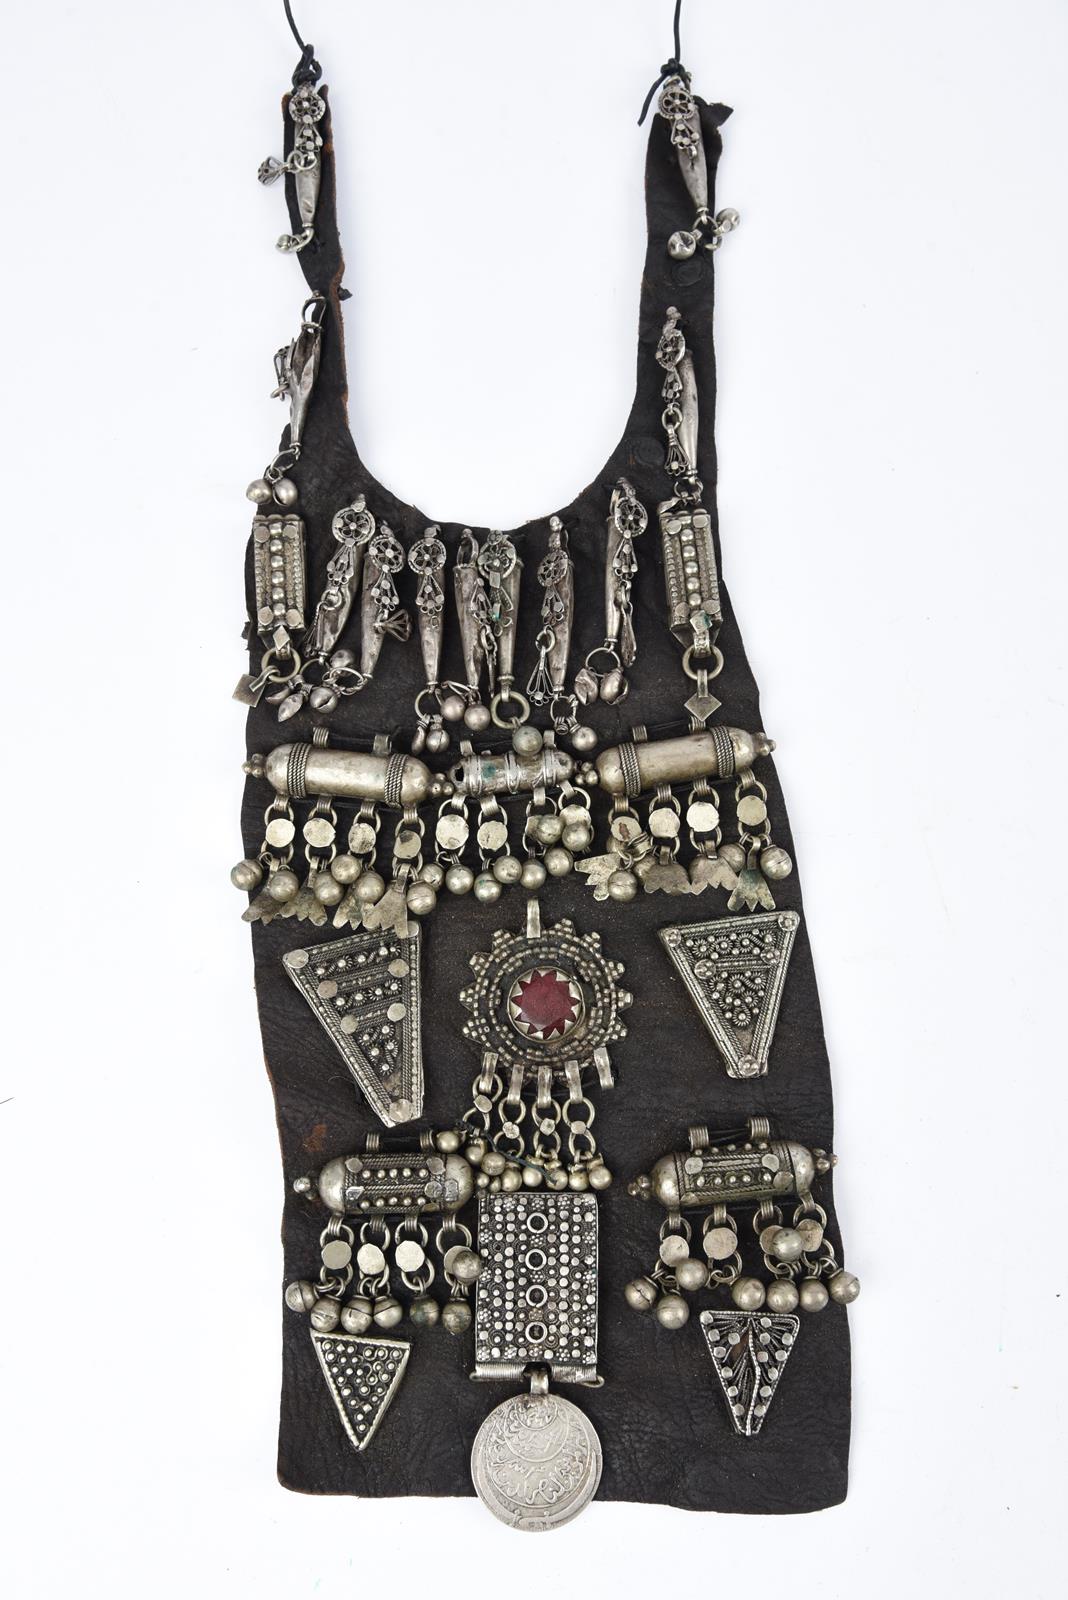 λA Bedouin amulet chest ornament cloth with numerous sewn on amulets and beads, 62cm long, and three - Bild 6 aus 27